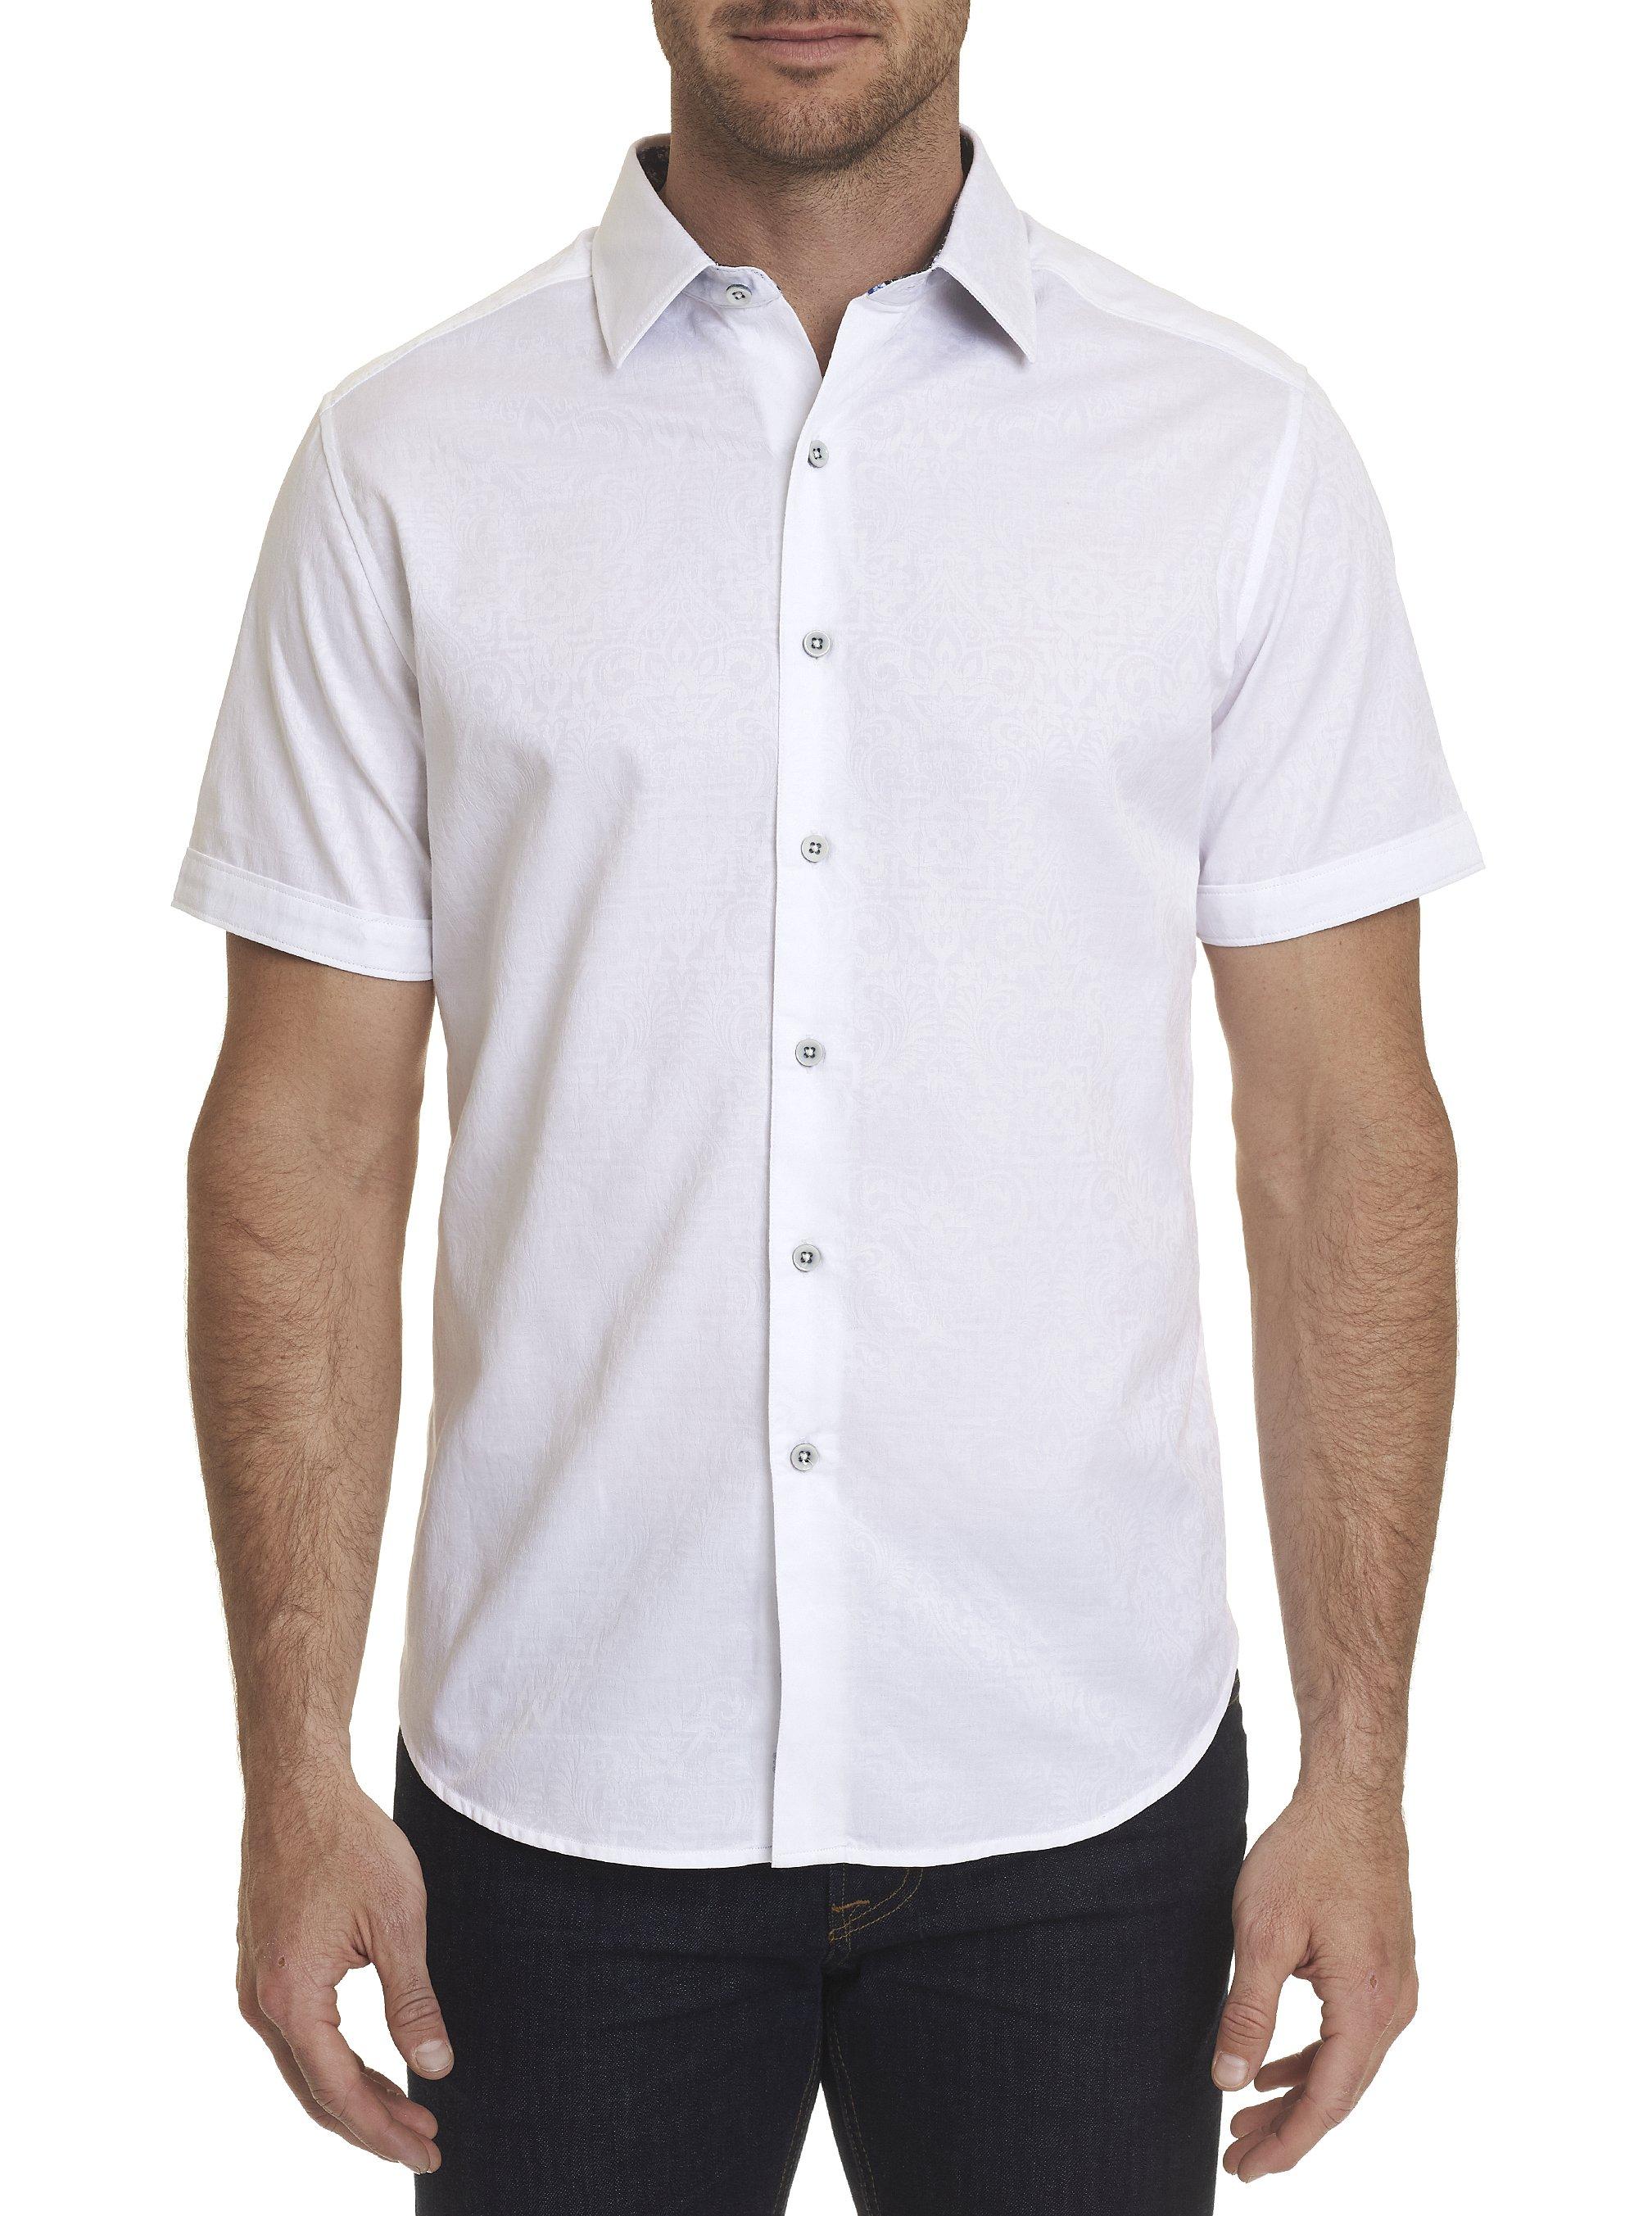 Robert Graham Equinox Short Sleeve Shirt in White for Men - Lyst